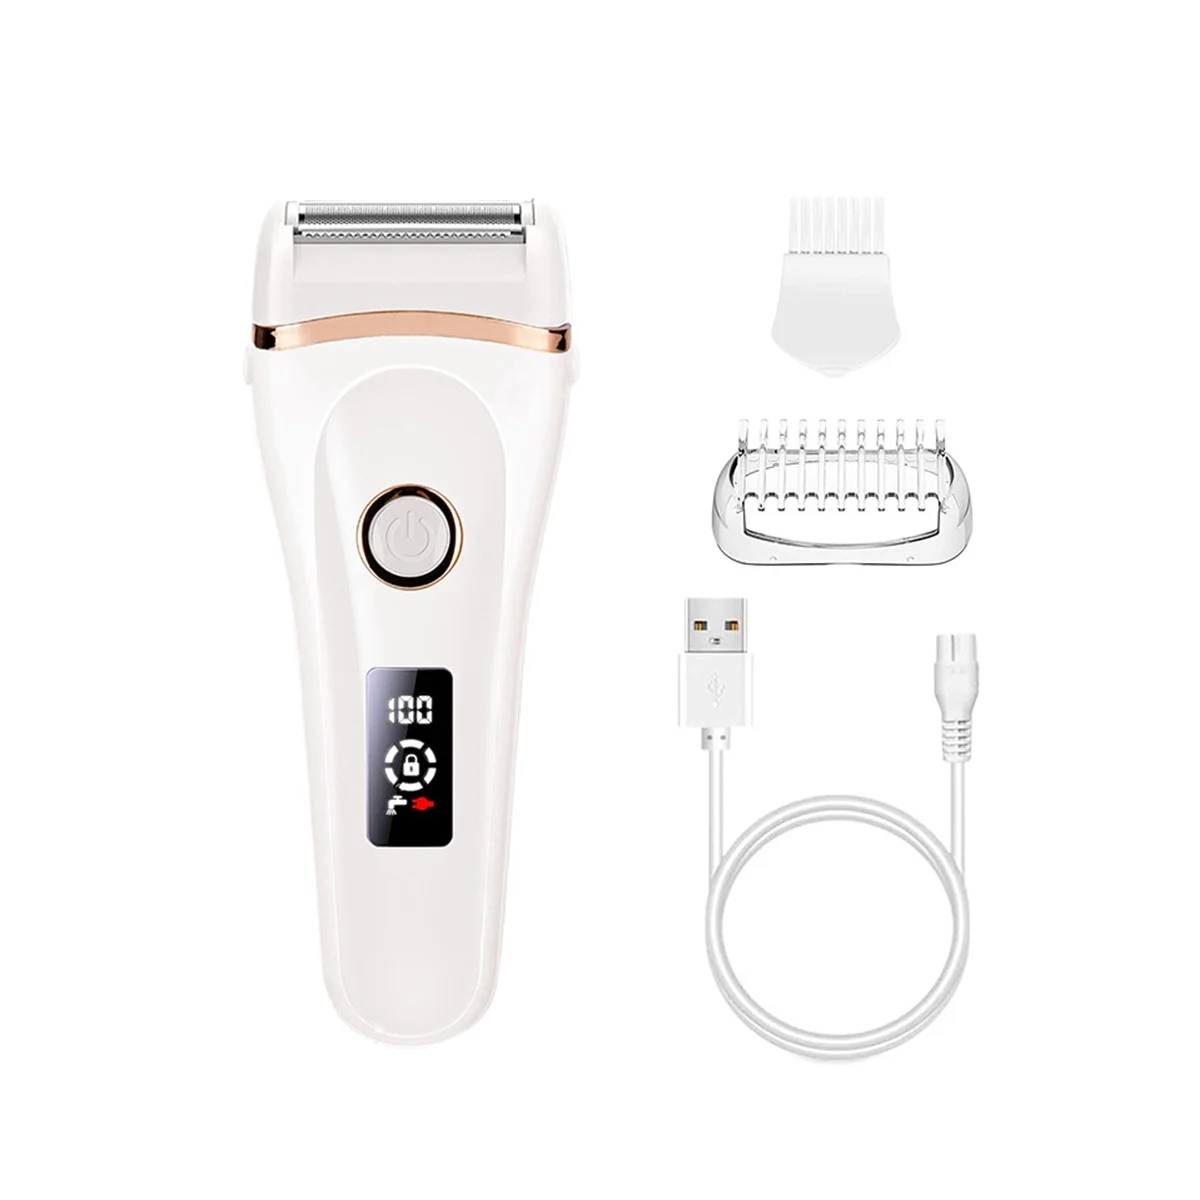 

Электрическая бритва для женщин, Аккумуляторный триммер для зоны бикини с зарядкой от USB, водонепроницаемый, ж/к дисплей, для влажной и сухой бритья всего тела